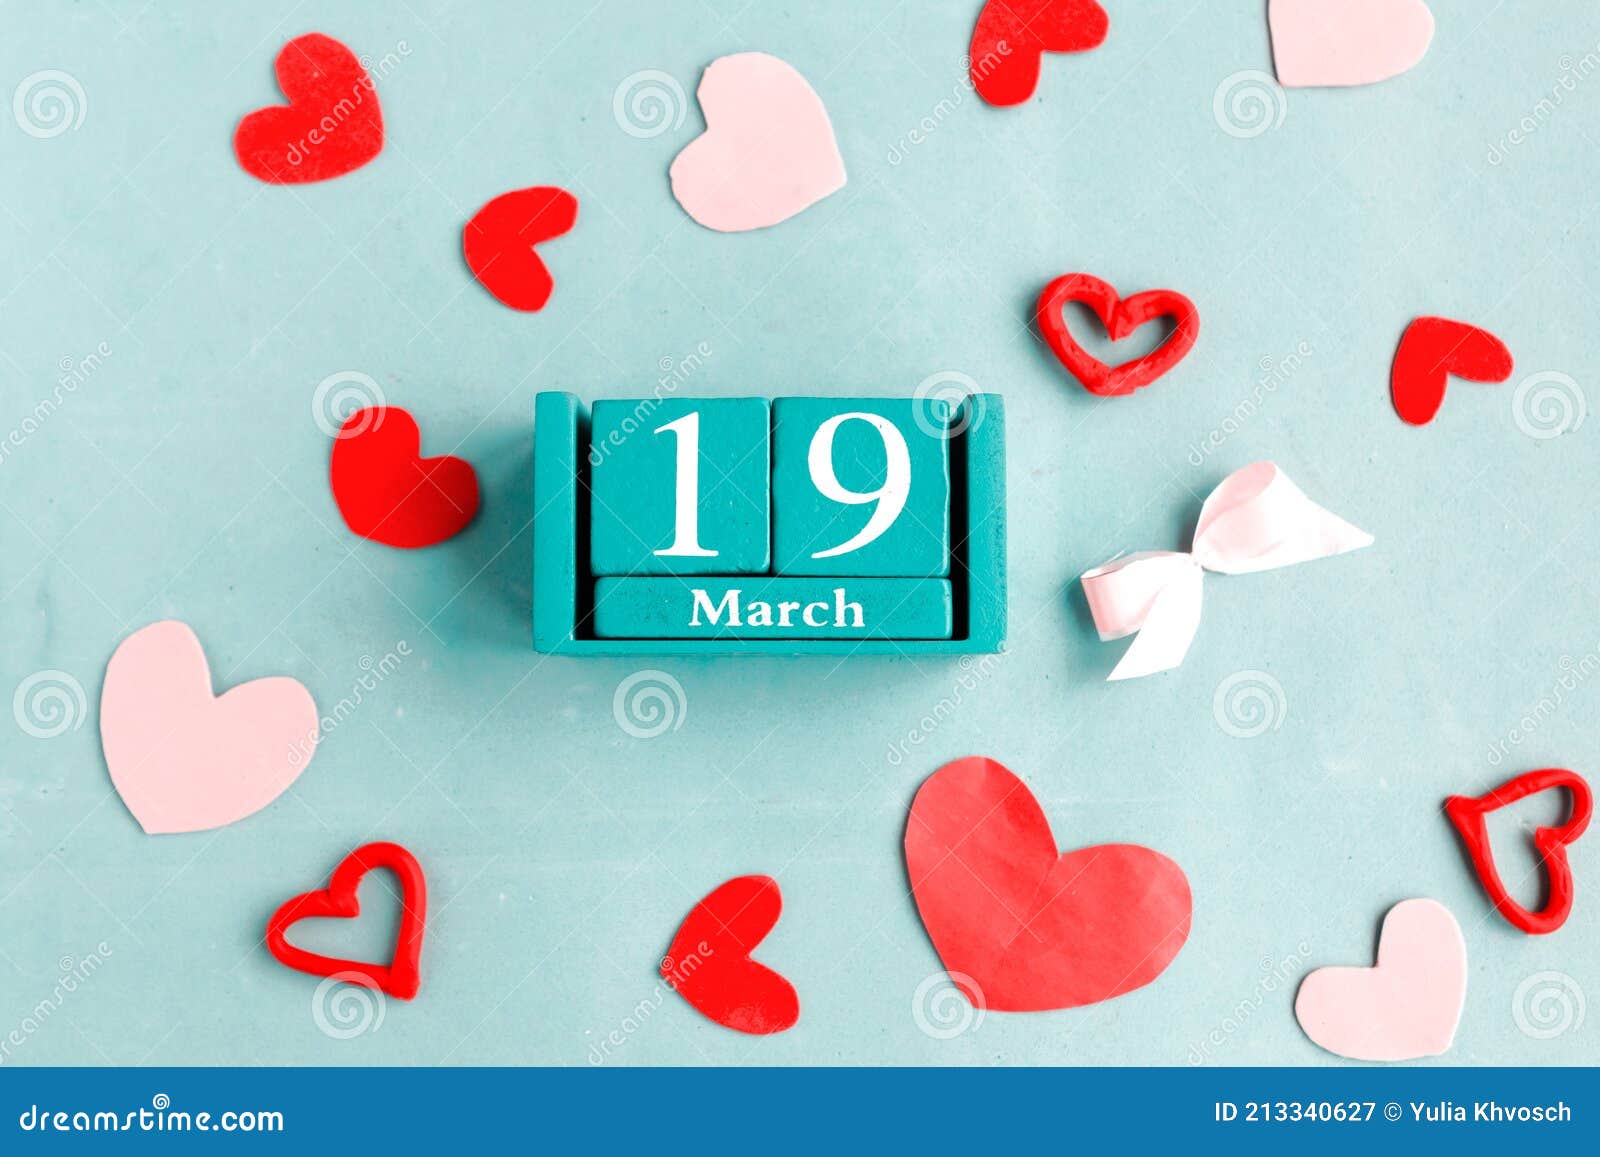 19 Mars. Calendrier Cube Bleu Avec Date Du Mois Image stock - Image du bloc, pastel: 213340627